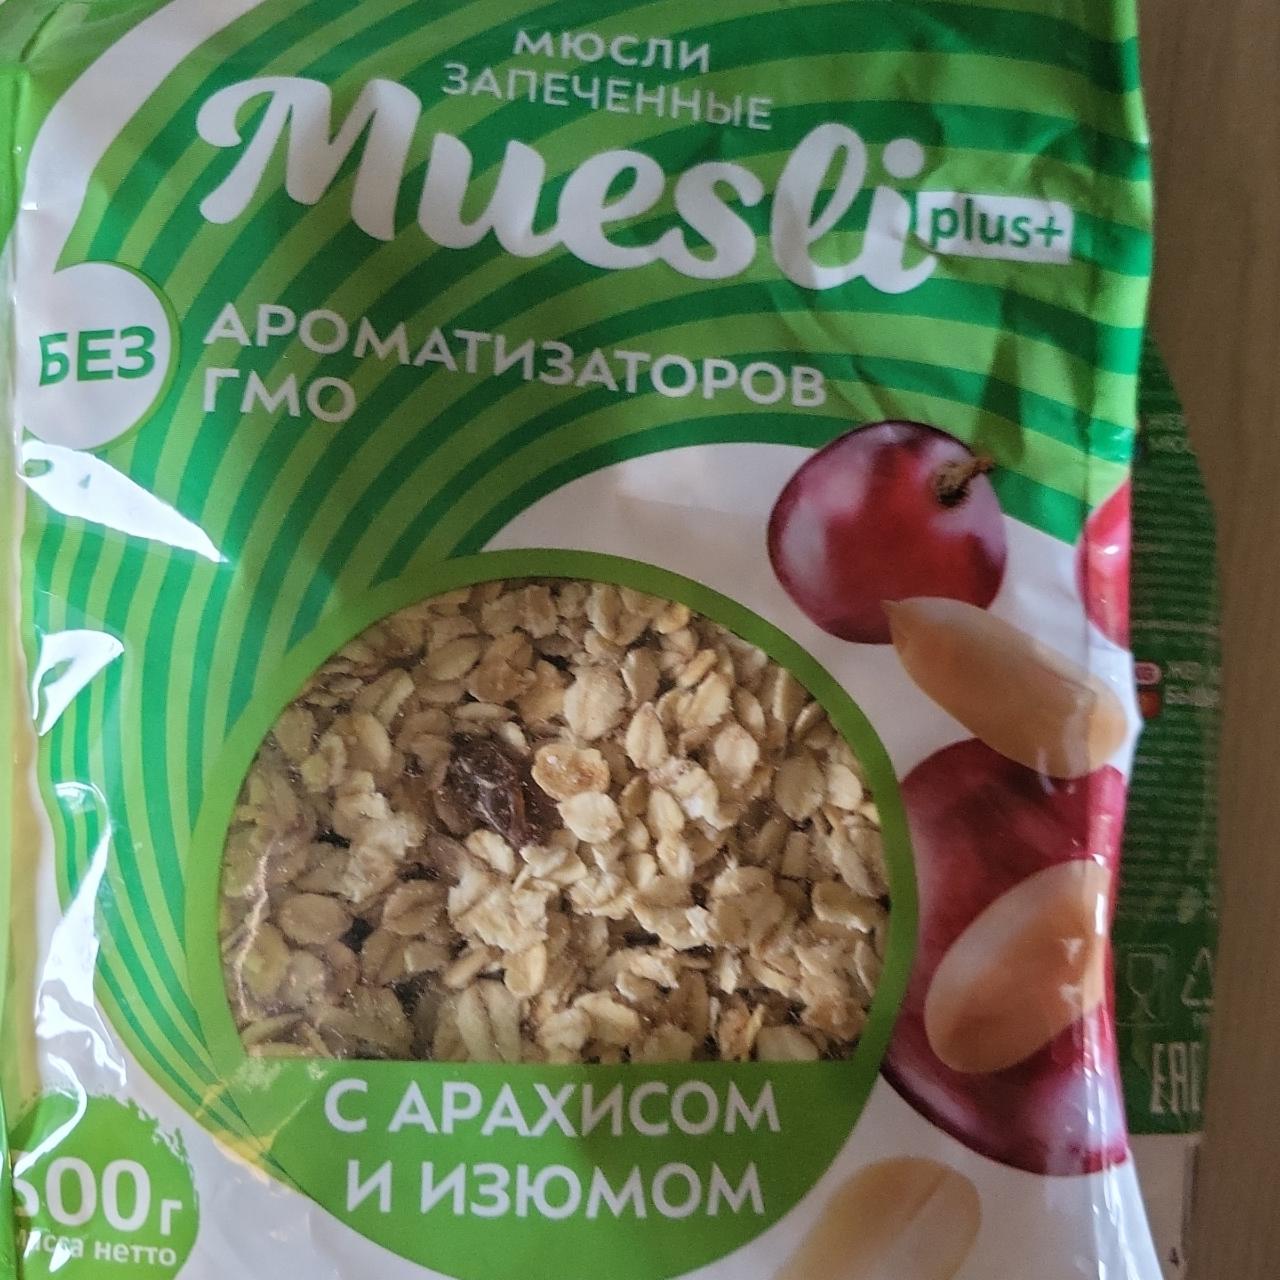 Фото - Мюсли запечённые с арахисом и изюмом Muesli plus+